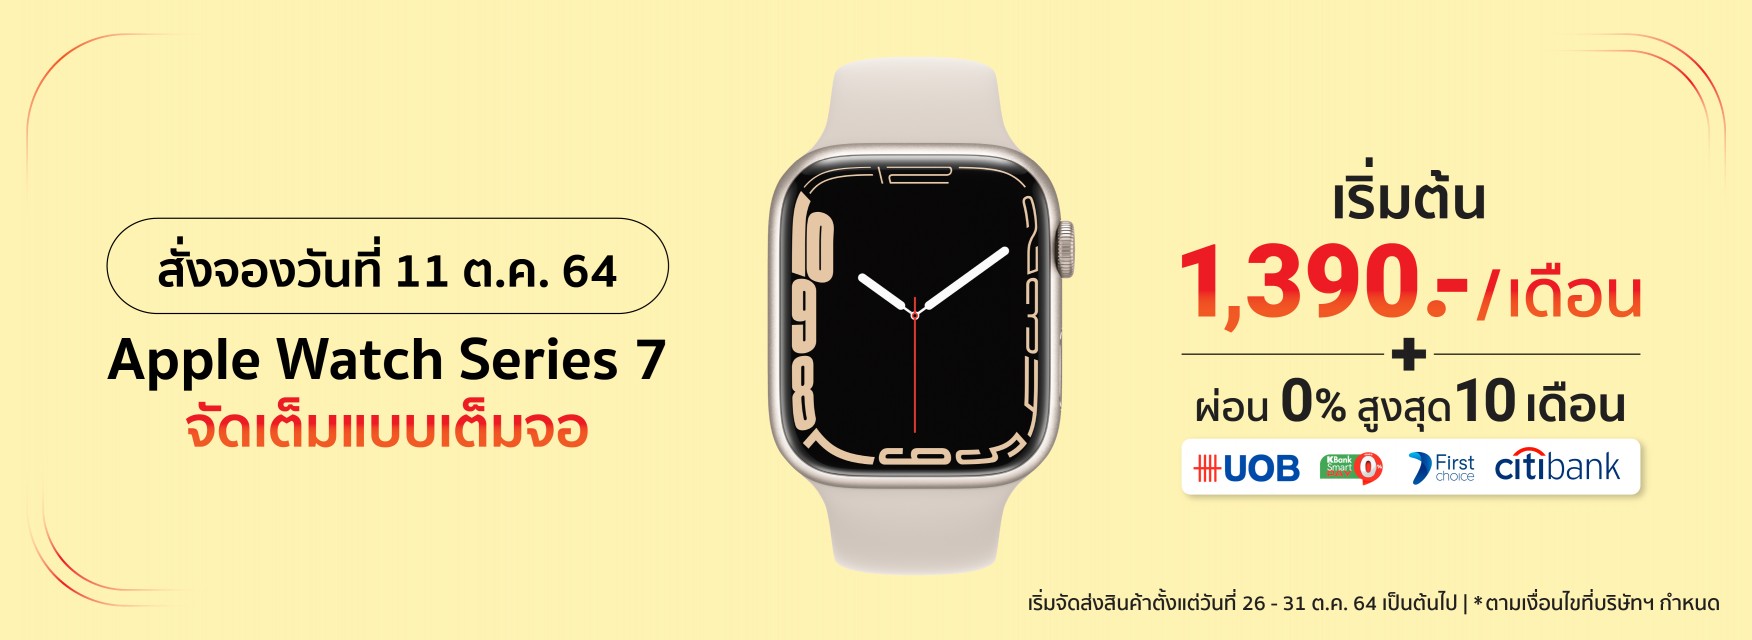 Apple Watch Series 7 สั่งจองได้แล้ววันนี้